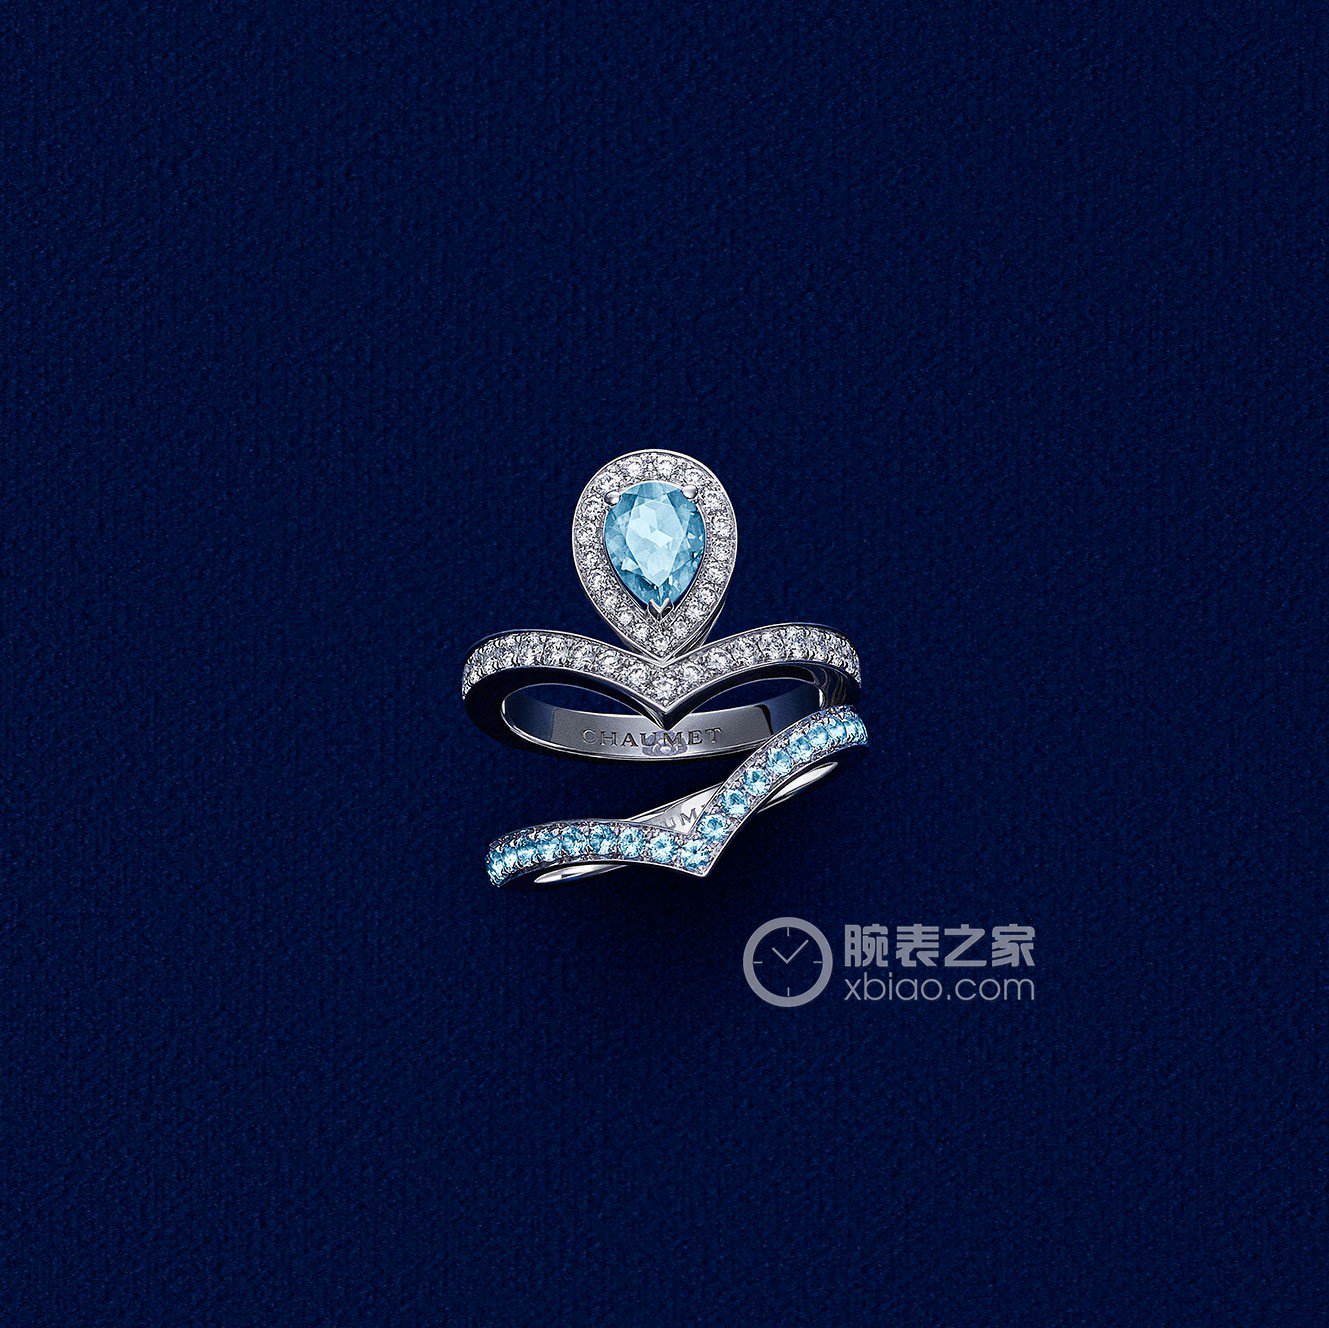 高清图|CHAUMET加冕•爱紫水晶戒指戒指图片10|腕表之家-珠宝